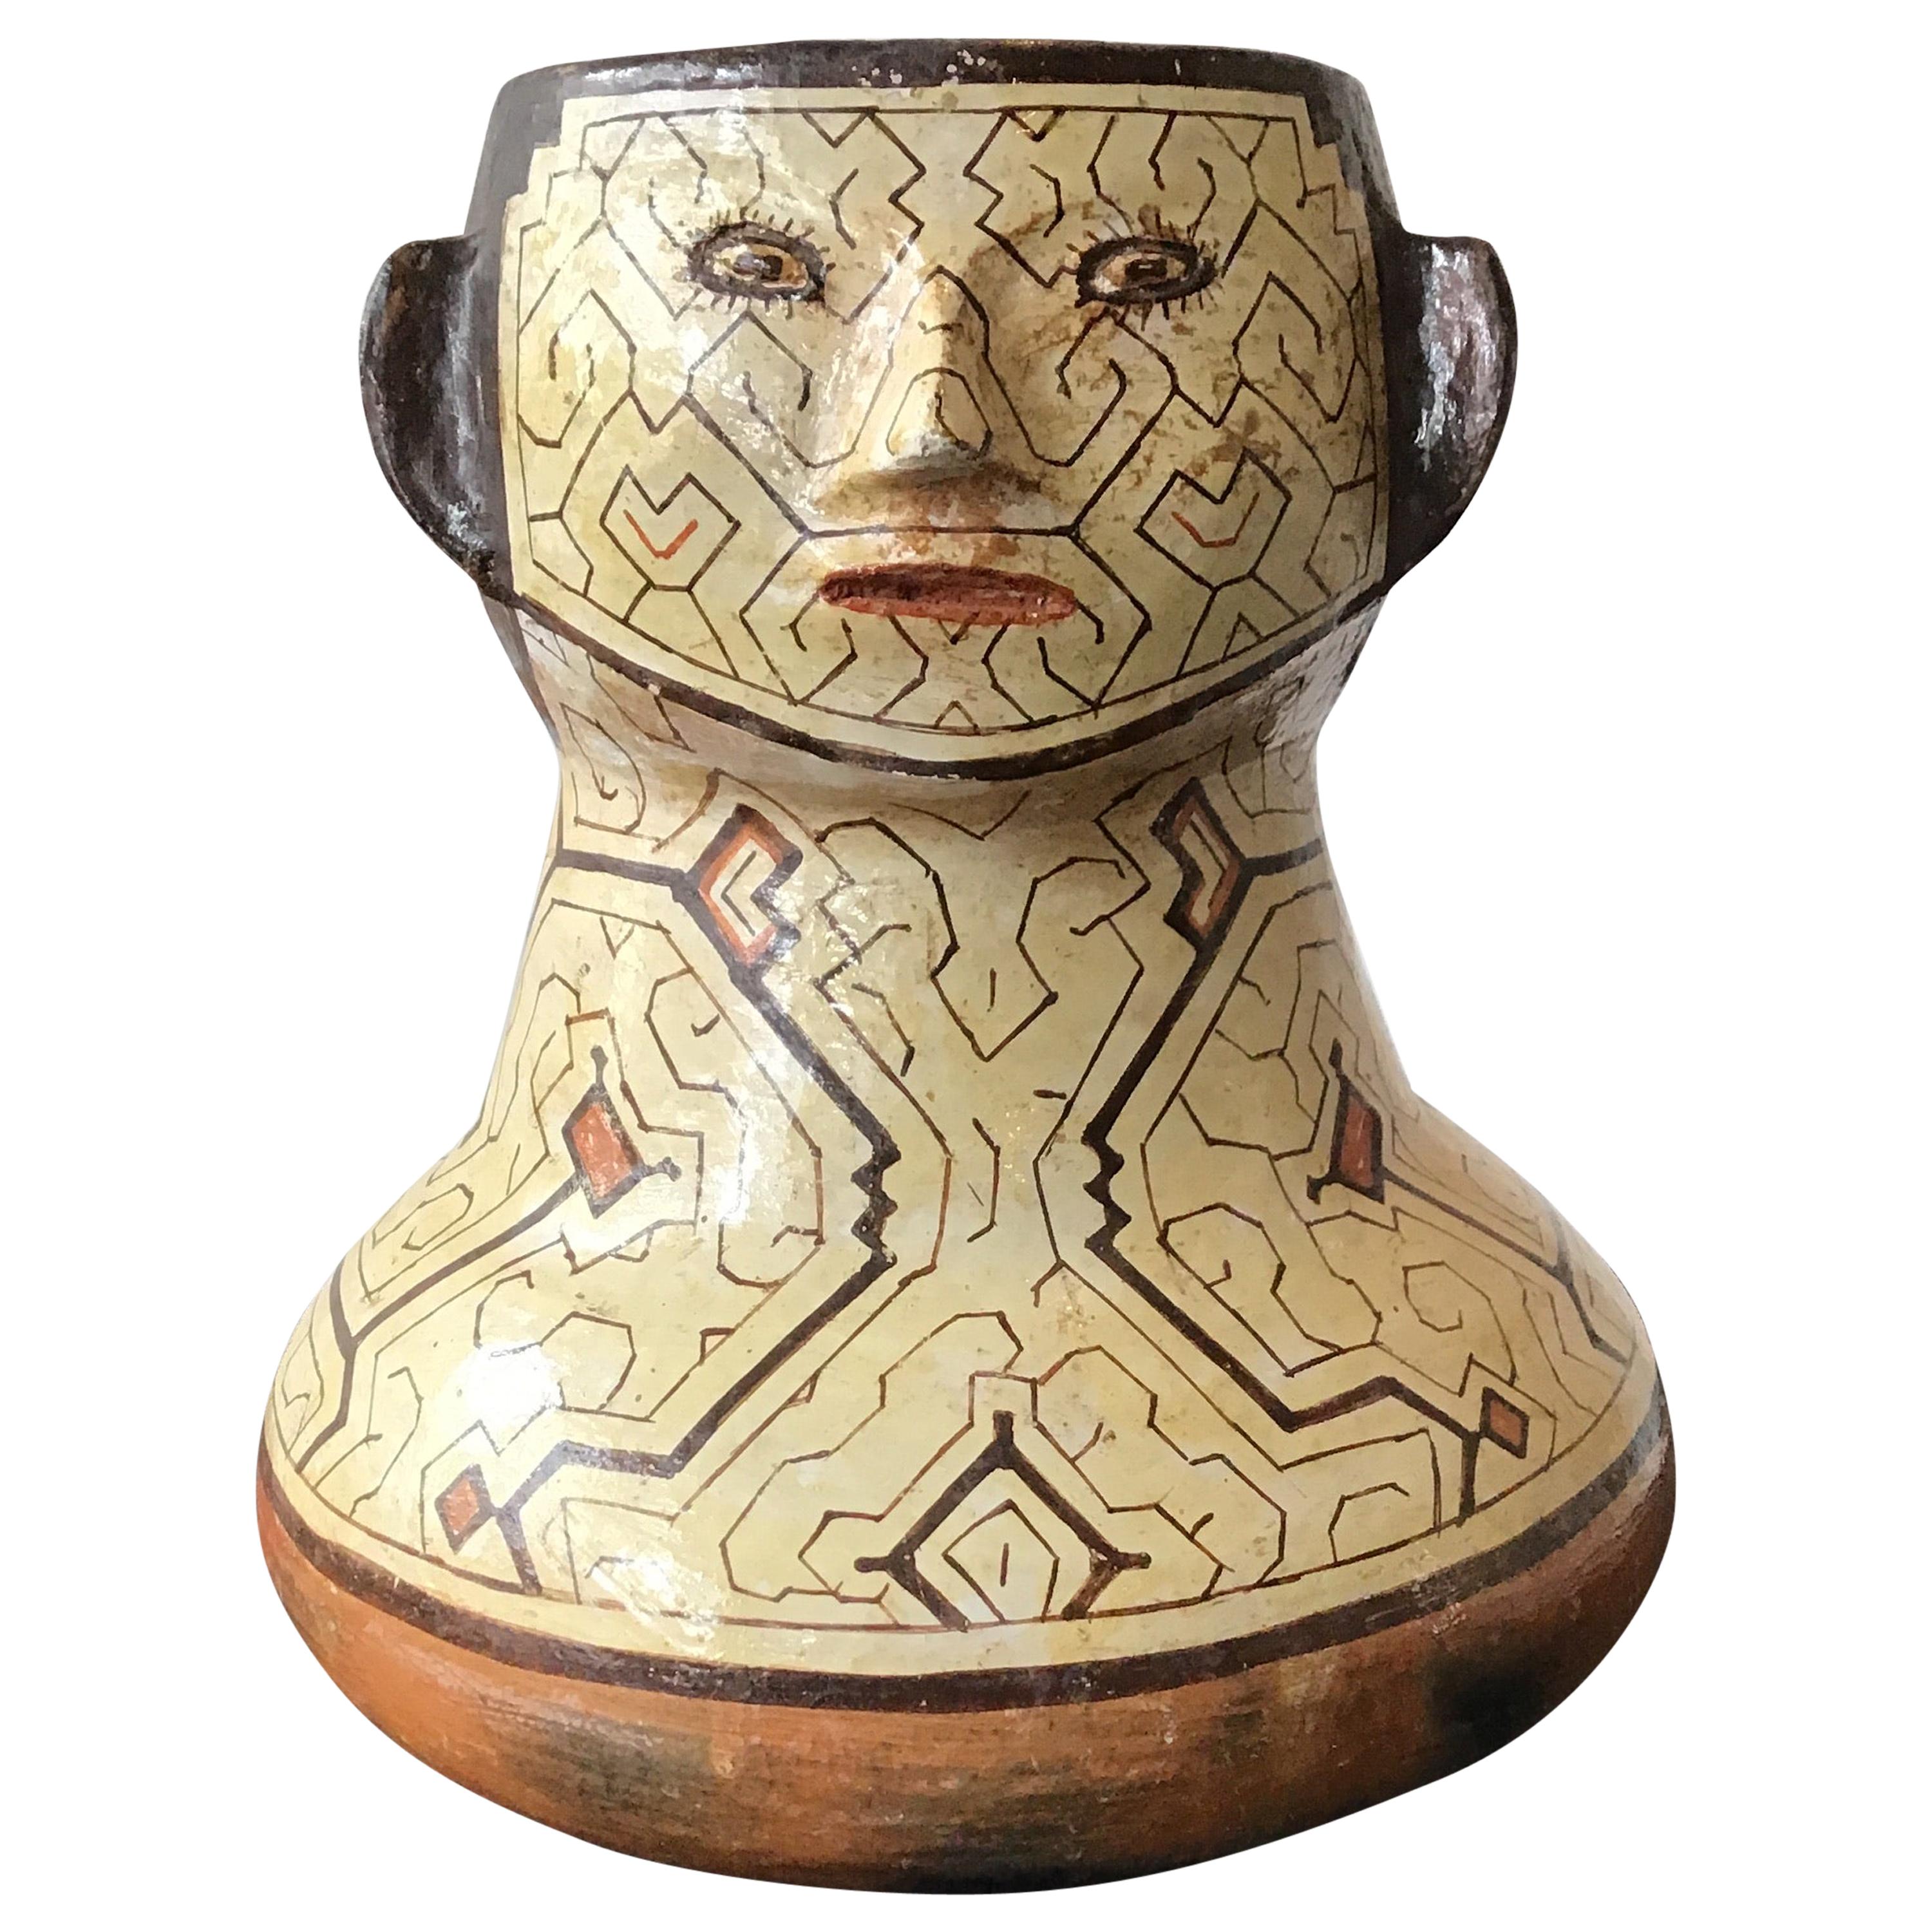 Peruanische Vase aus Ton mit peruanischem Shipibo-F Gesicht